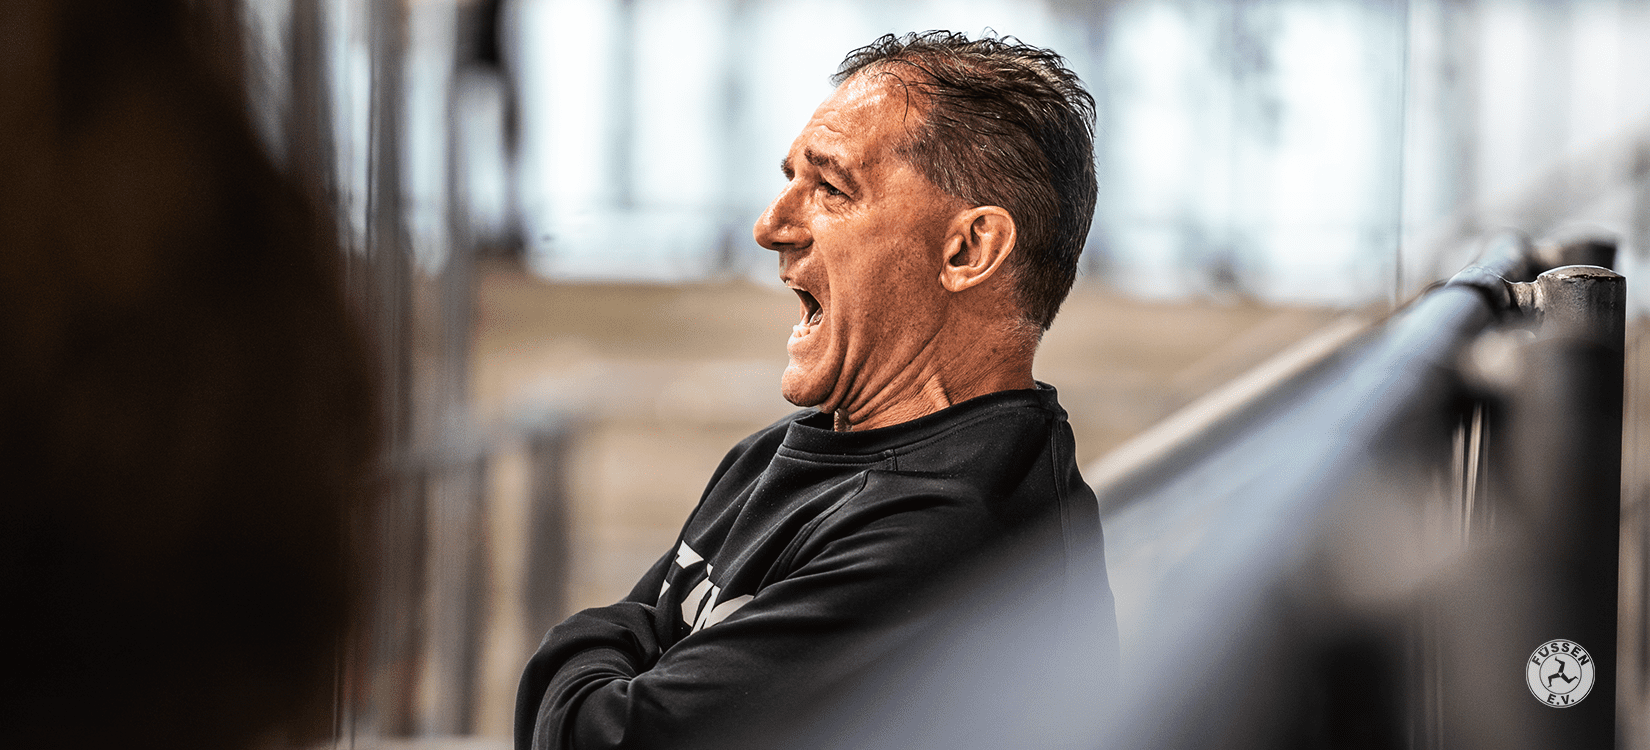 Georg Holzmann kehrt als DNL-Trainer an den Kobelhang zurück